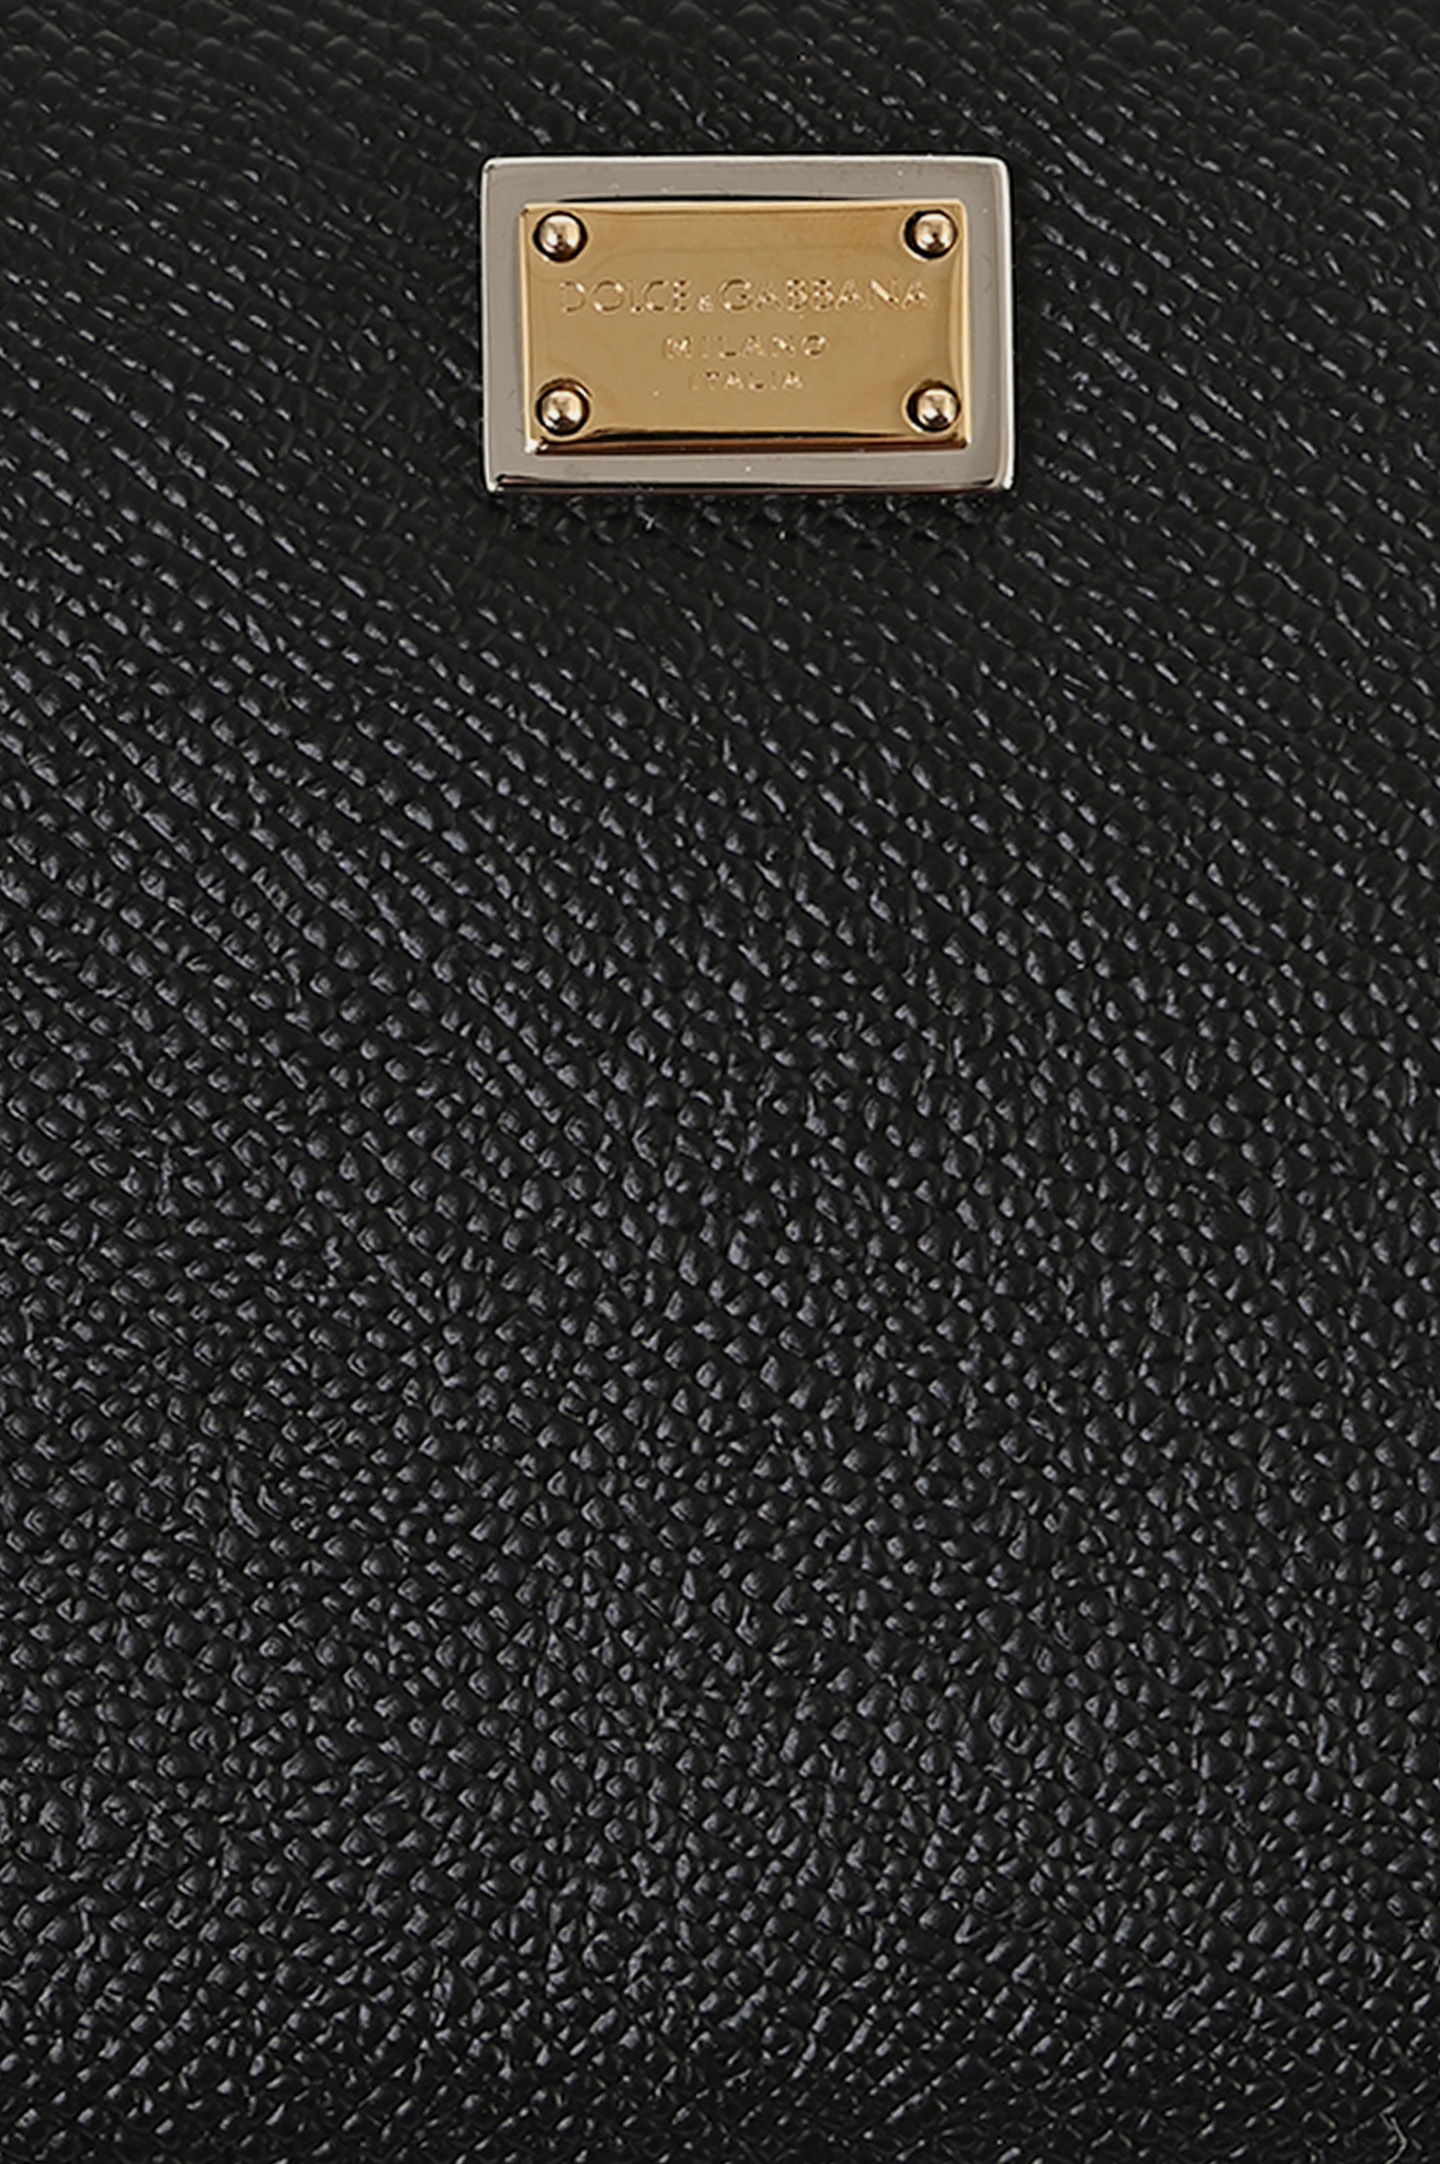 Кожаный кошелек с логотипом DOLCE & GABBANA BI0473 A1001, цвет: Черный, Женский